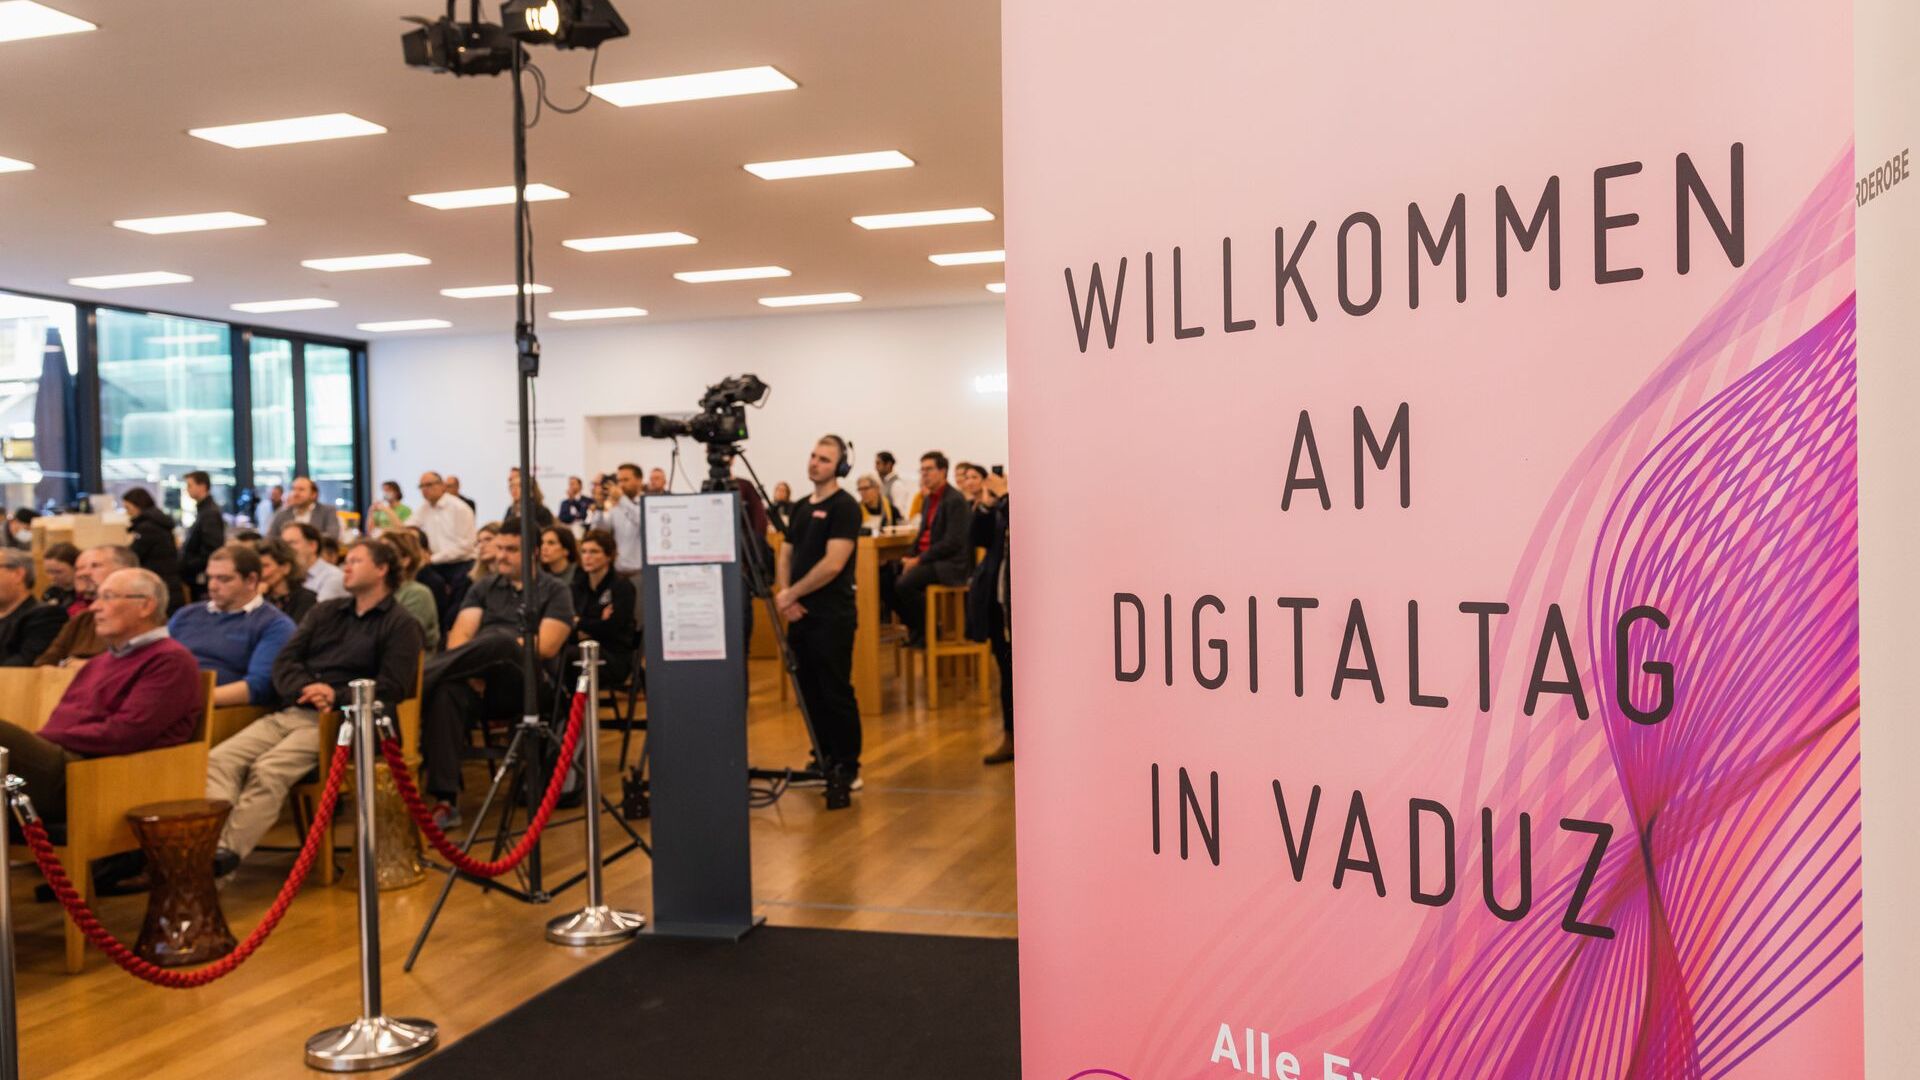 "Digitaltag Vaduz" ได้รับการต้อนรับจาก Kunstmuseum เมืองหลวงของราชรัฐลิกเตนสไตน์ในวันเสาร์ที่ 6 พฤศจิกายน 2021